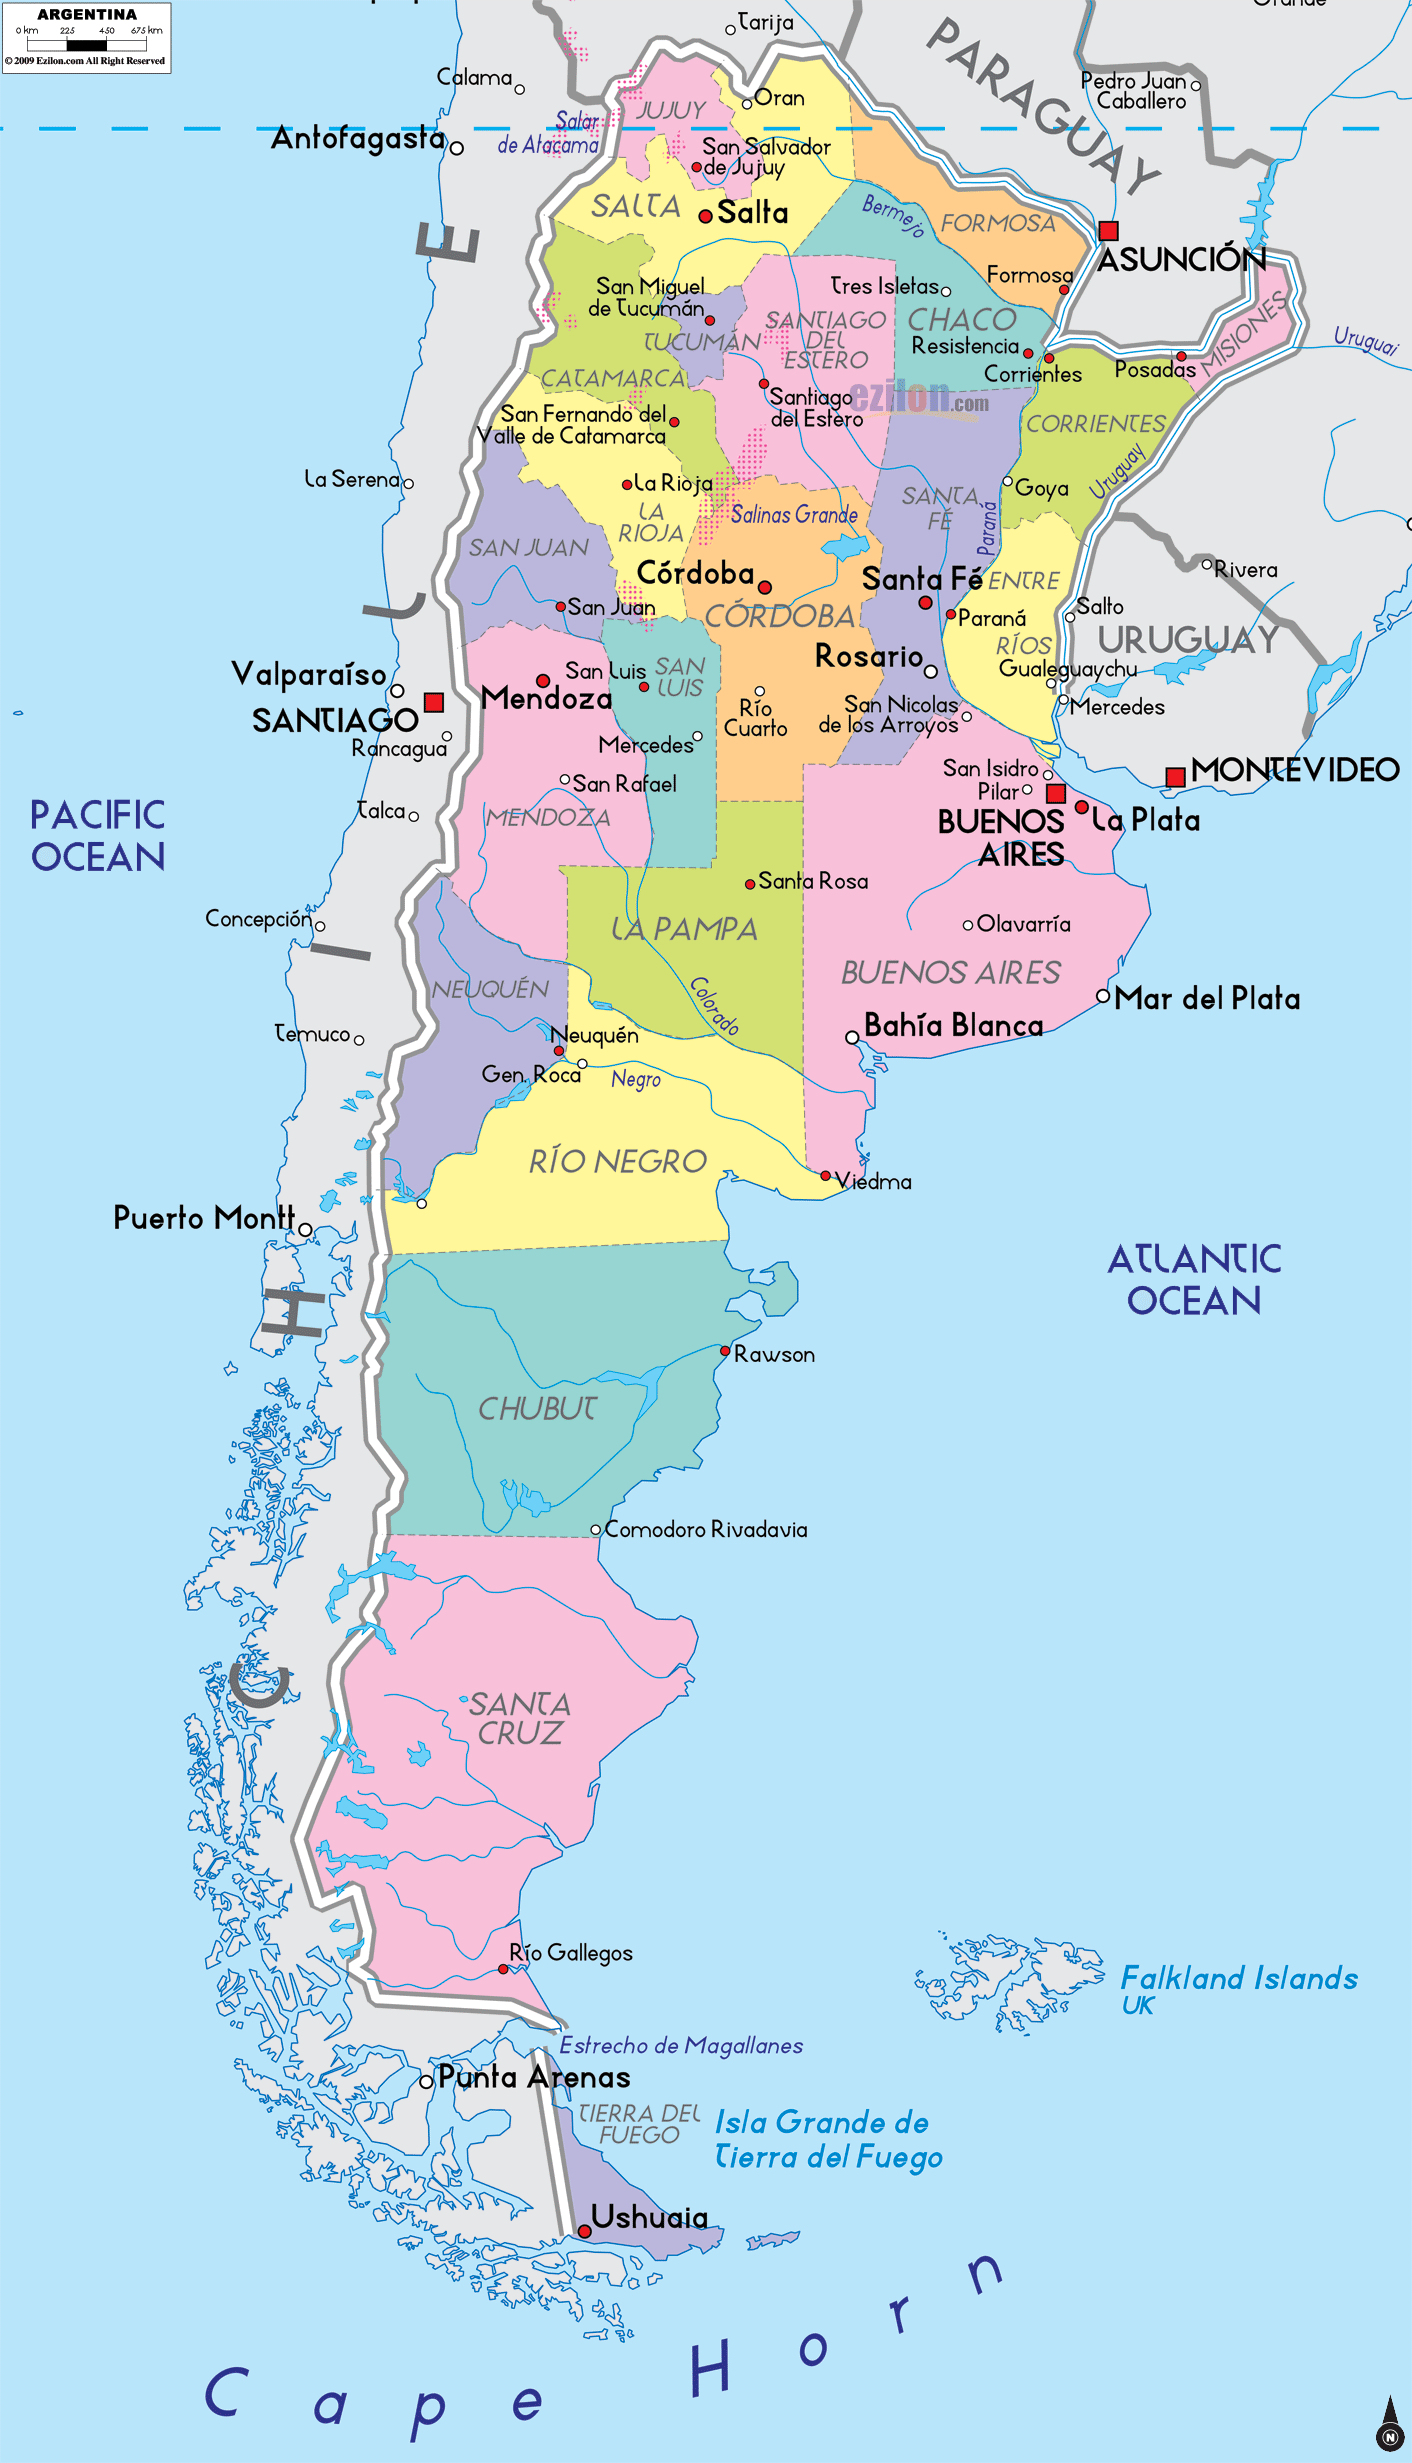 http://www.ezilon.com/maps/images/southamerica/political-map-of-Argentina.gif